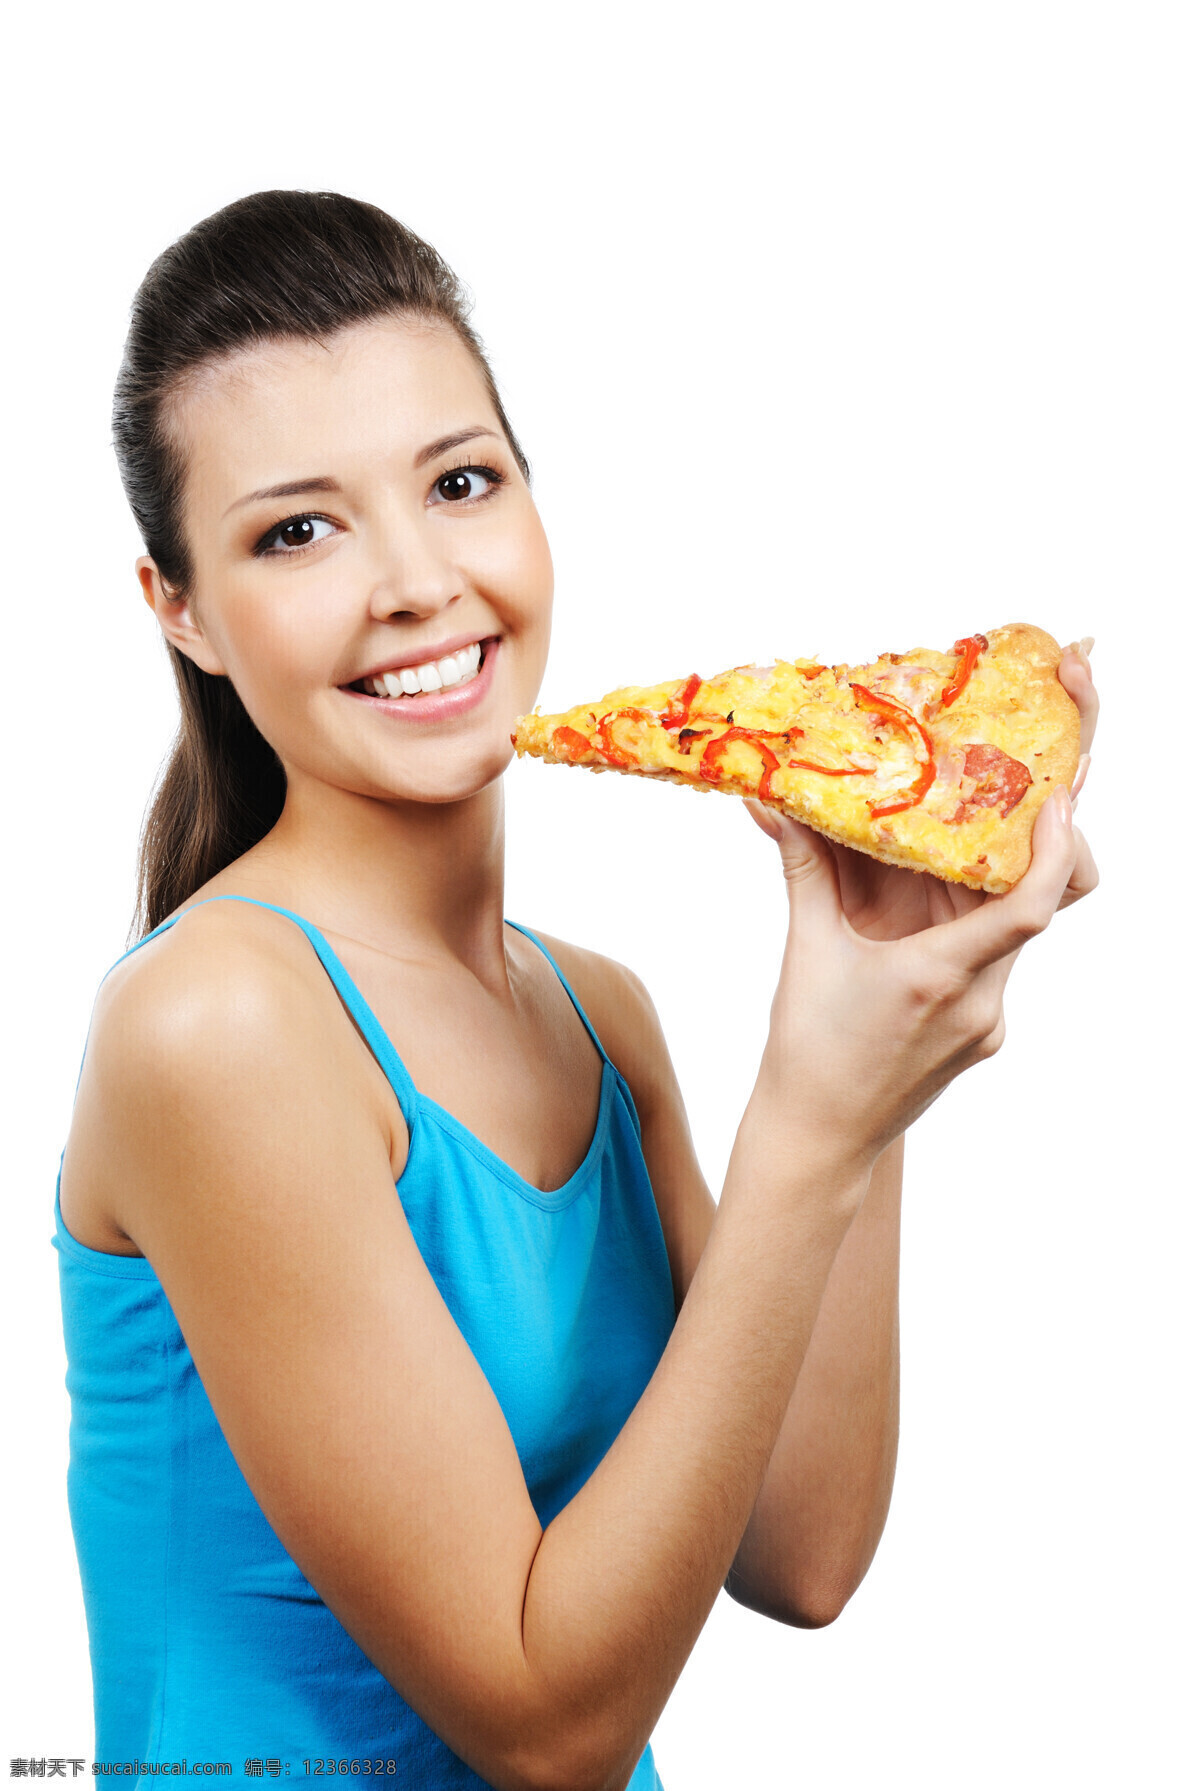 披萨 女人 热量食品 开心 女性 外国女人 年轻女子 吃披萨的女人 美食 比萨饼 比萨 意大利馅饼 美味 西红柿 辣椒 番茄 西餐美食 美女图片 人物图片